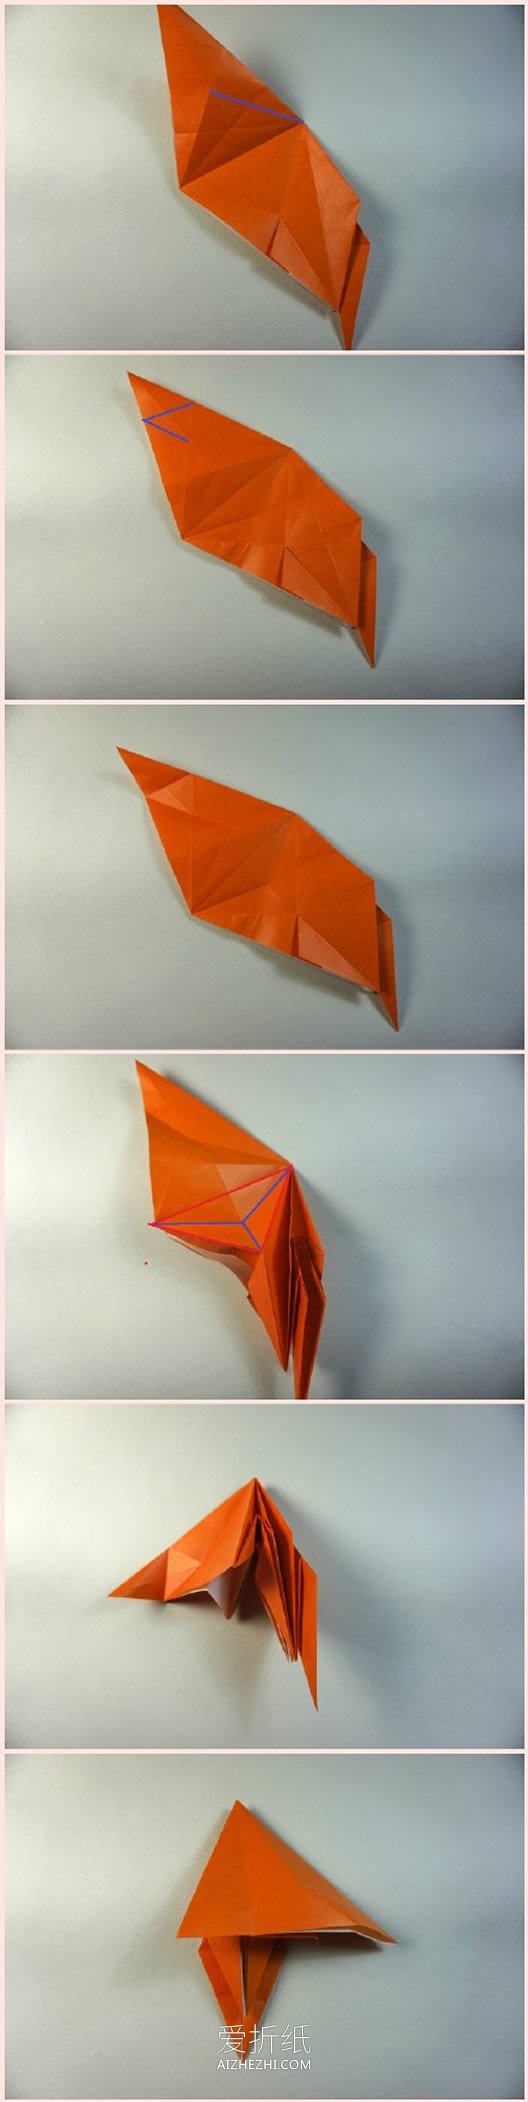 怎么折纸立体猴子图解 复杂猴子的折纸过程- www.aizhezhi.com